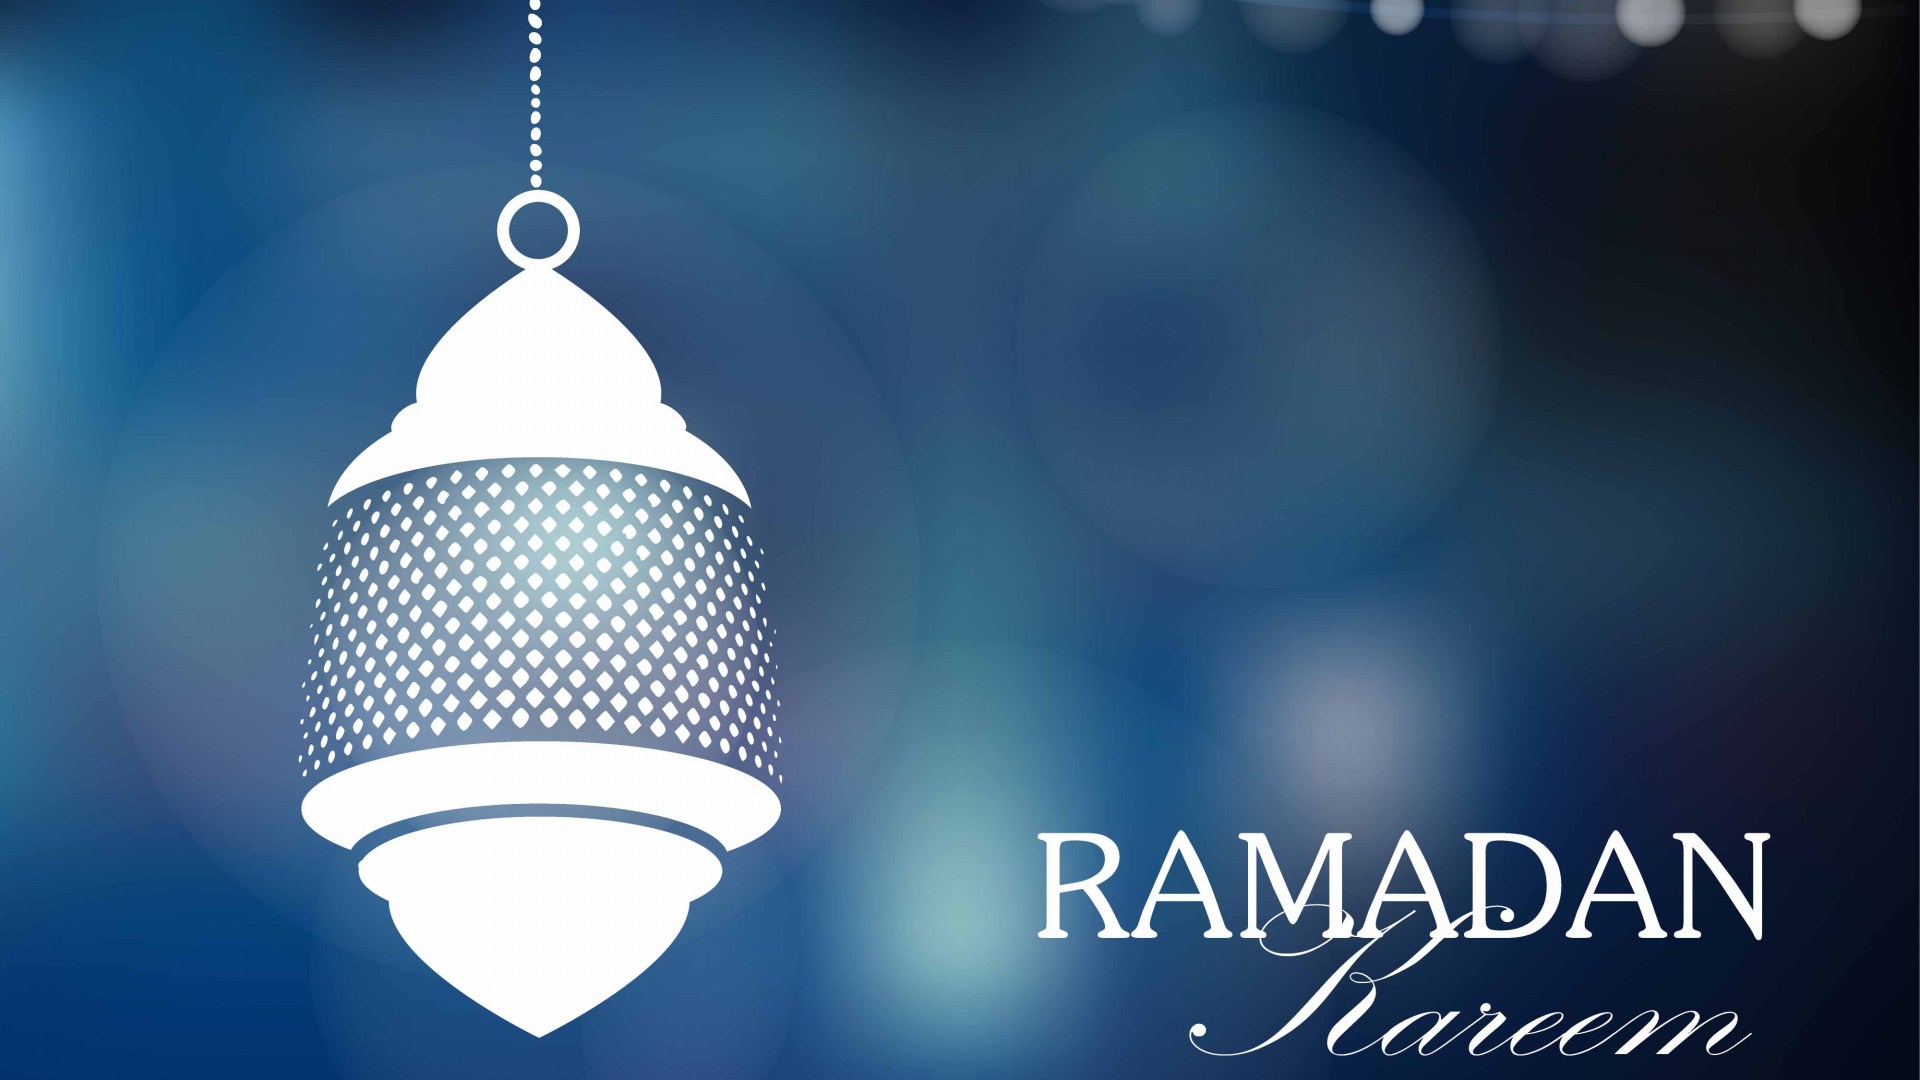 Ramadan Kareem Wallpaper - Ramadan Hd Wallpapers 1080p - 1920x1080 Wallpaper  